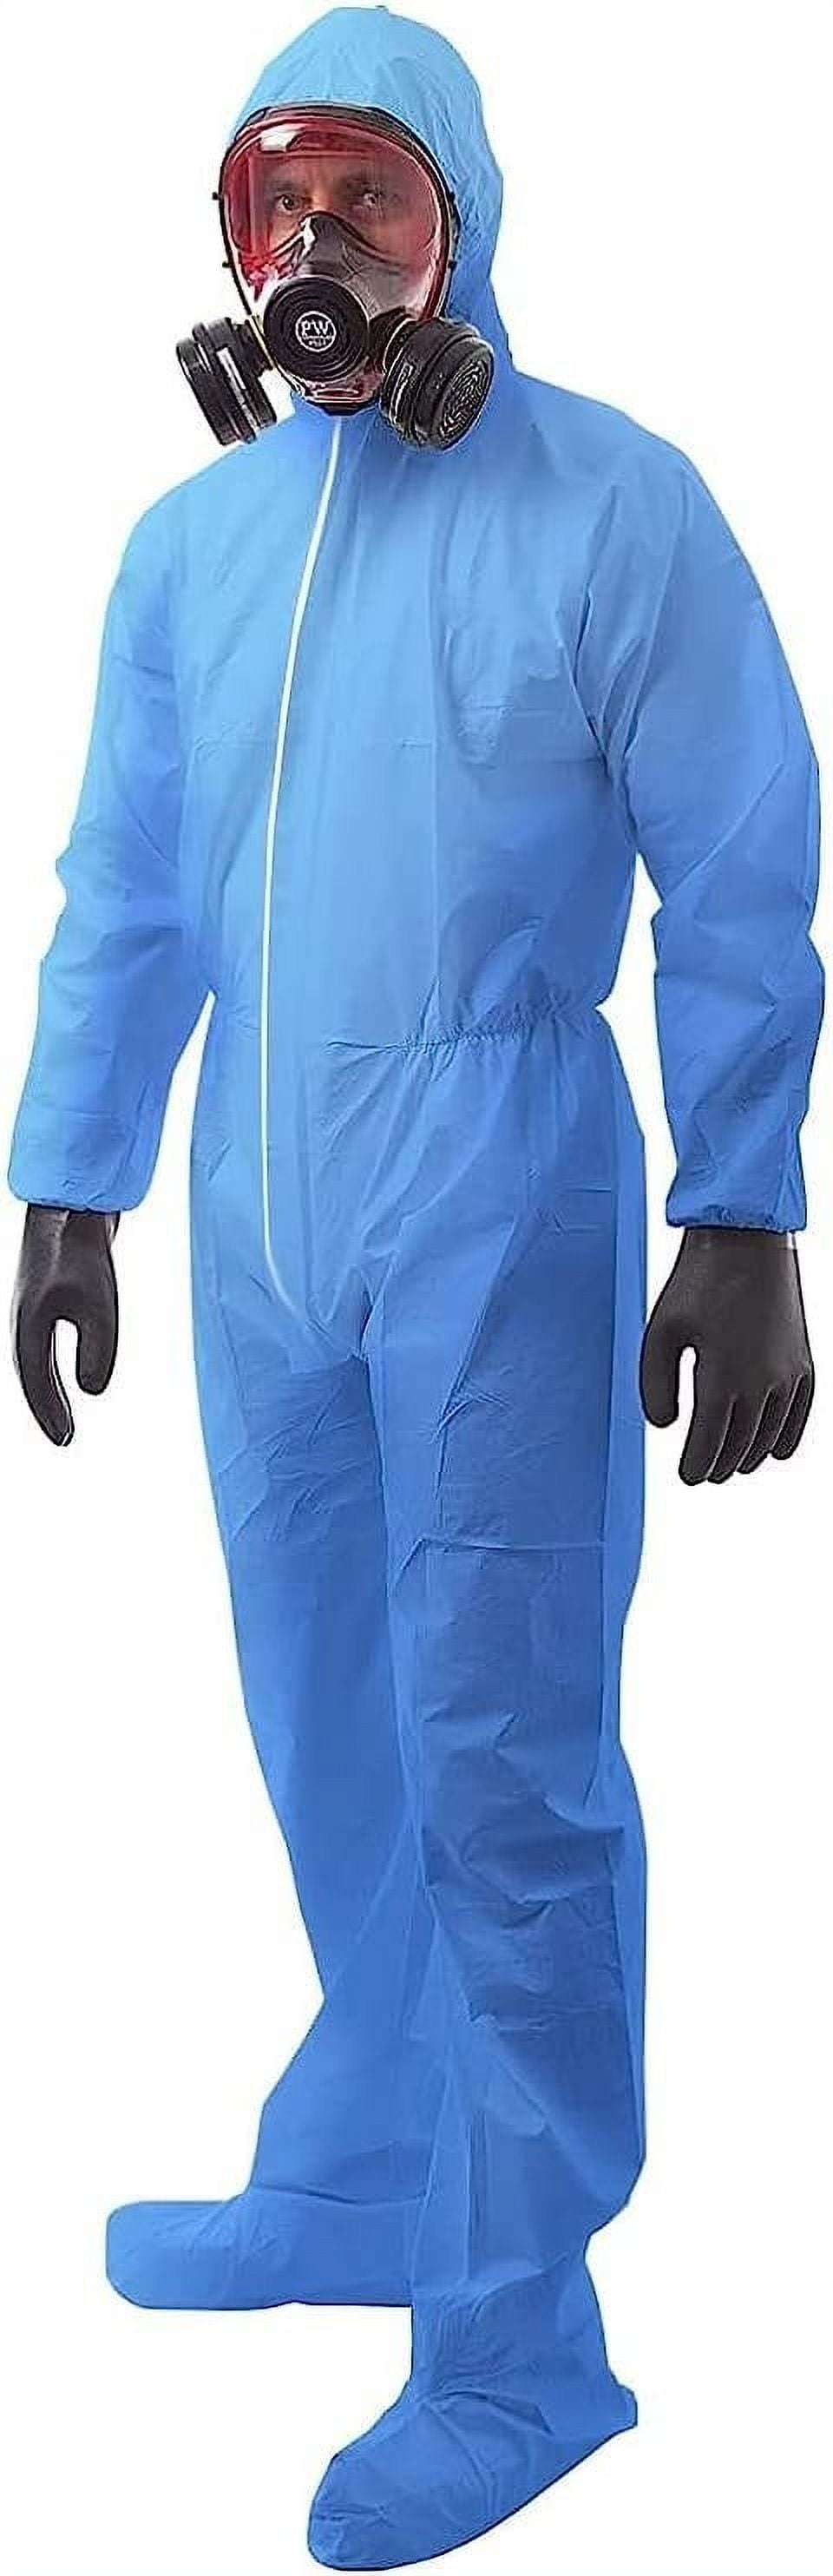 Medtecs Hazmat Suits - 6 Sizes Options Disposable Coveralls Suit, Medical  Protective Coverall PPE Hazmat Suits